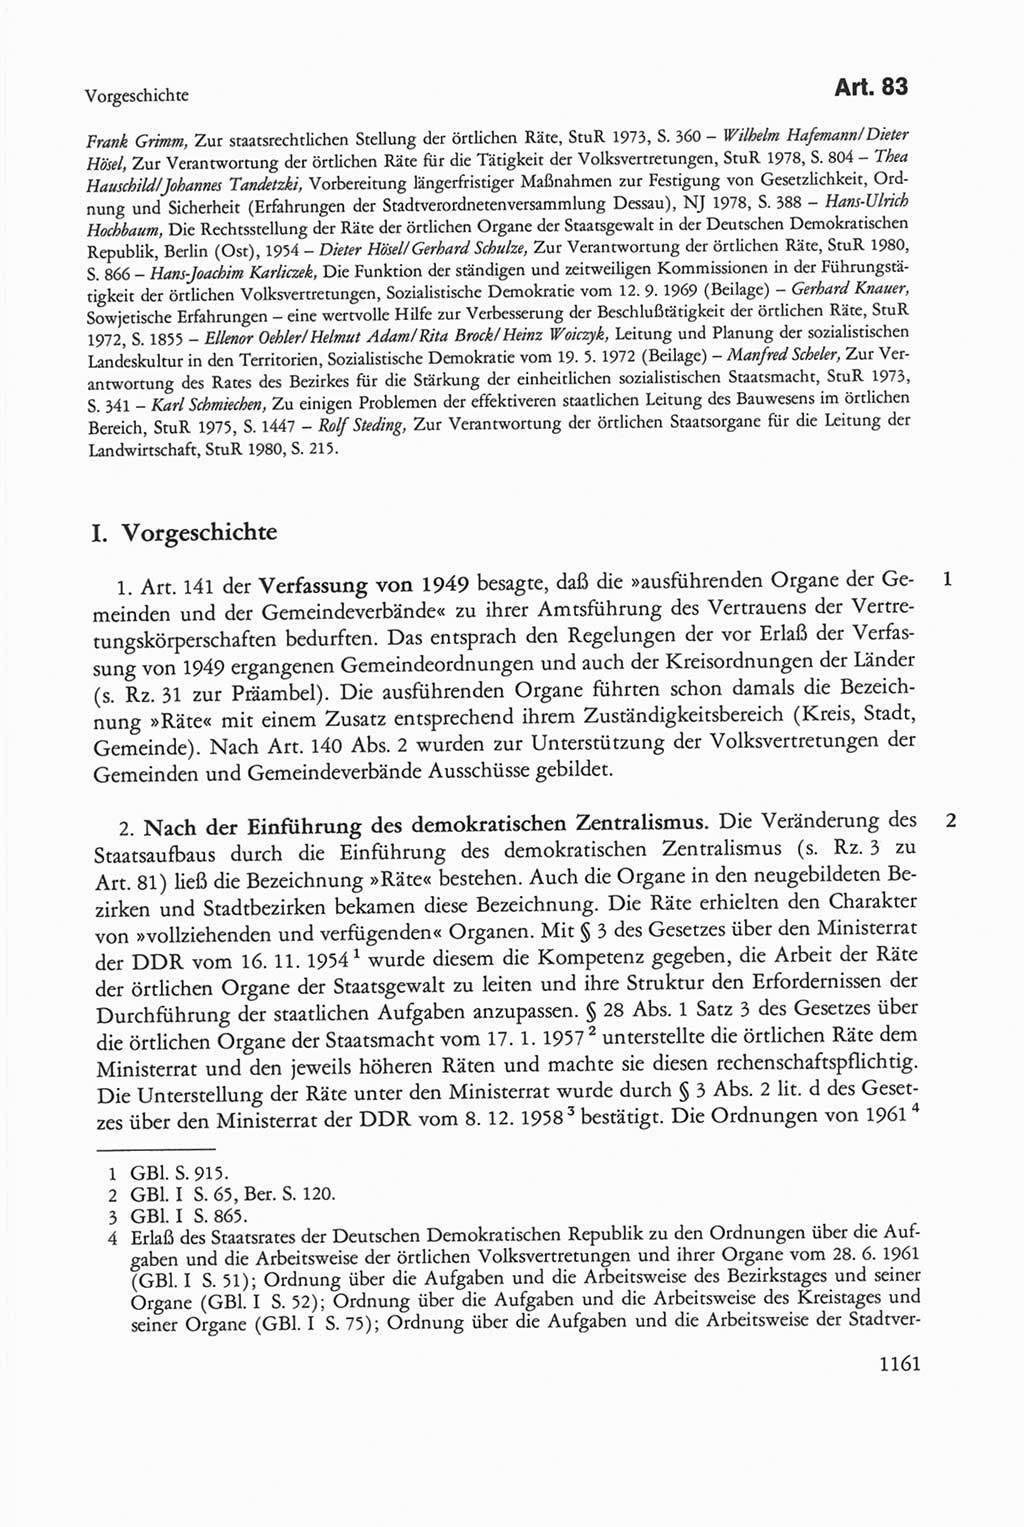 Die sozialistische Verfassung der Deutschen Demokratischen Republik (DDR), Kommentar mit einem Nachtrag 1997, Seite 1161 (Soz. Verf. DDR Komm. Nachtr. 1997, S. 1161)